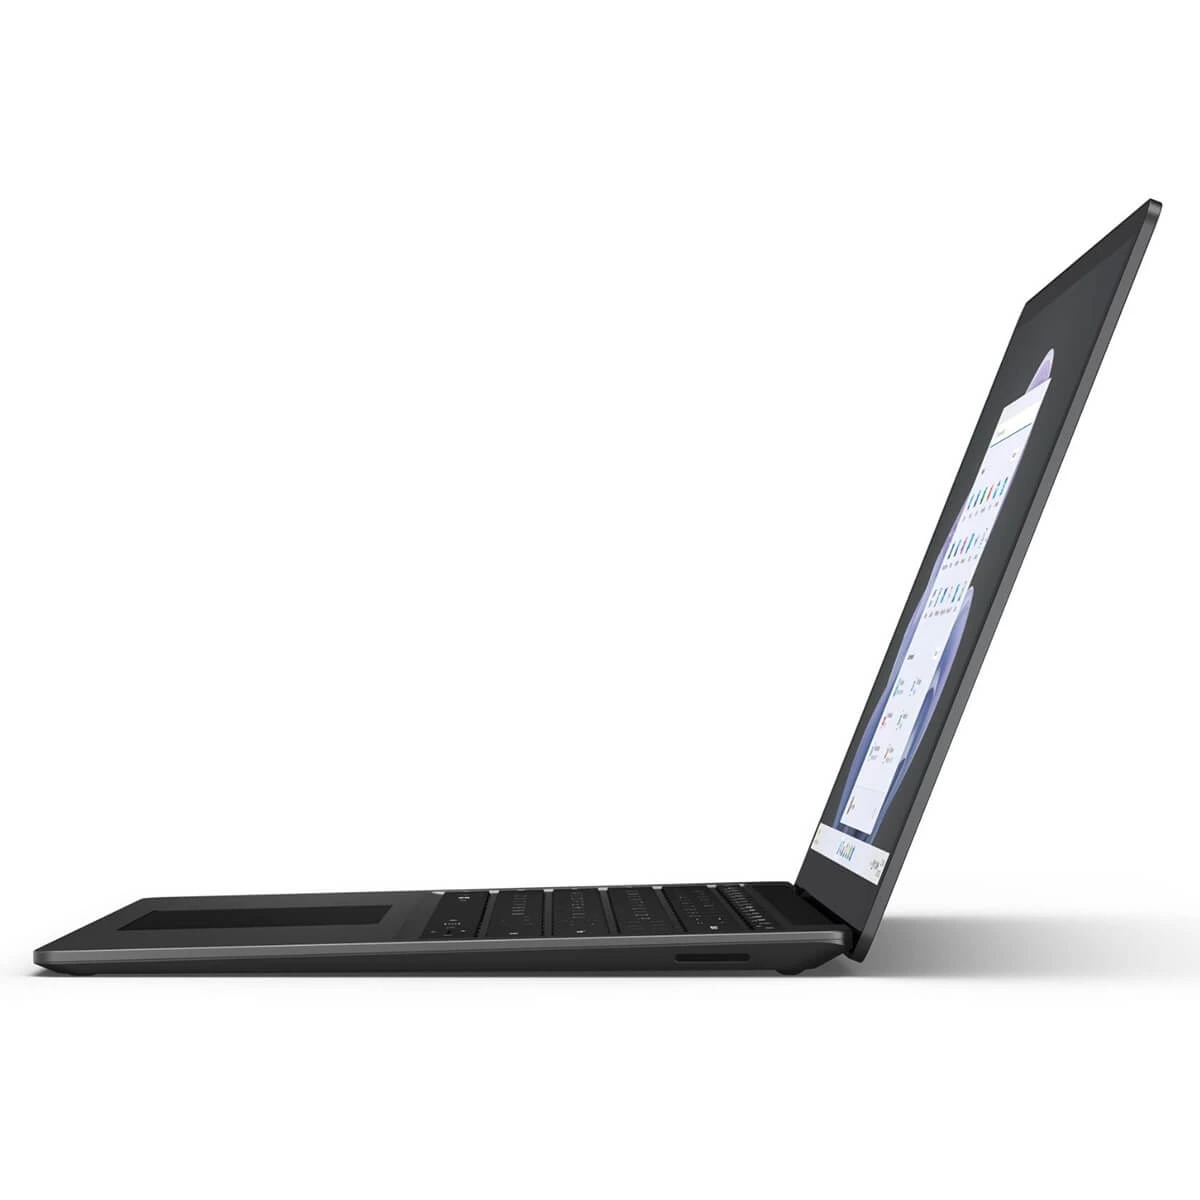 Microsoft Surface Laptop 5: Giới thiệu chiếc laptop hoàn hảo từ Microsoft với thiết kế đẹp mắt, màn hình sắc nét và hiệu năng ổn định. Tham khảo hình ảnh liên quan để có thêm thông tin về cấu hình và tính năng đáng giá của Microsoft Surface Laptop